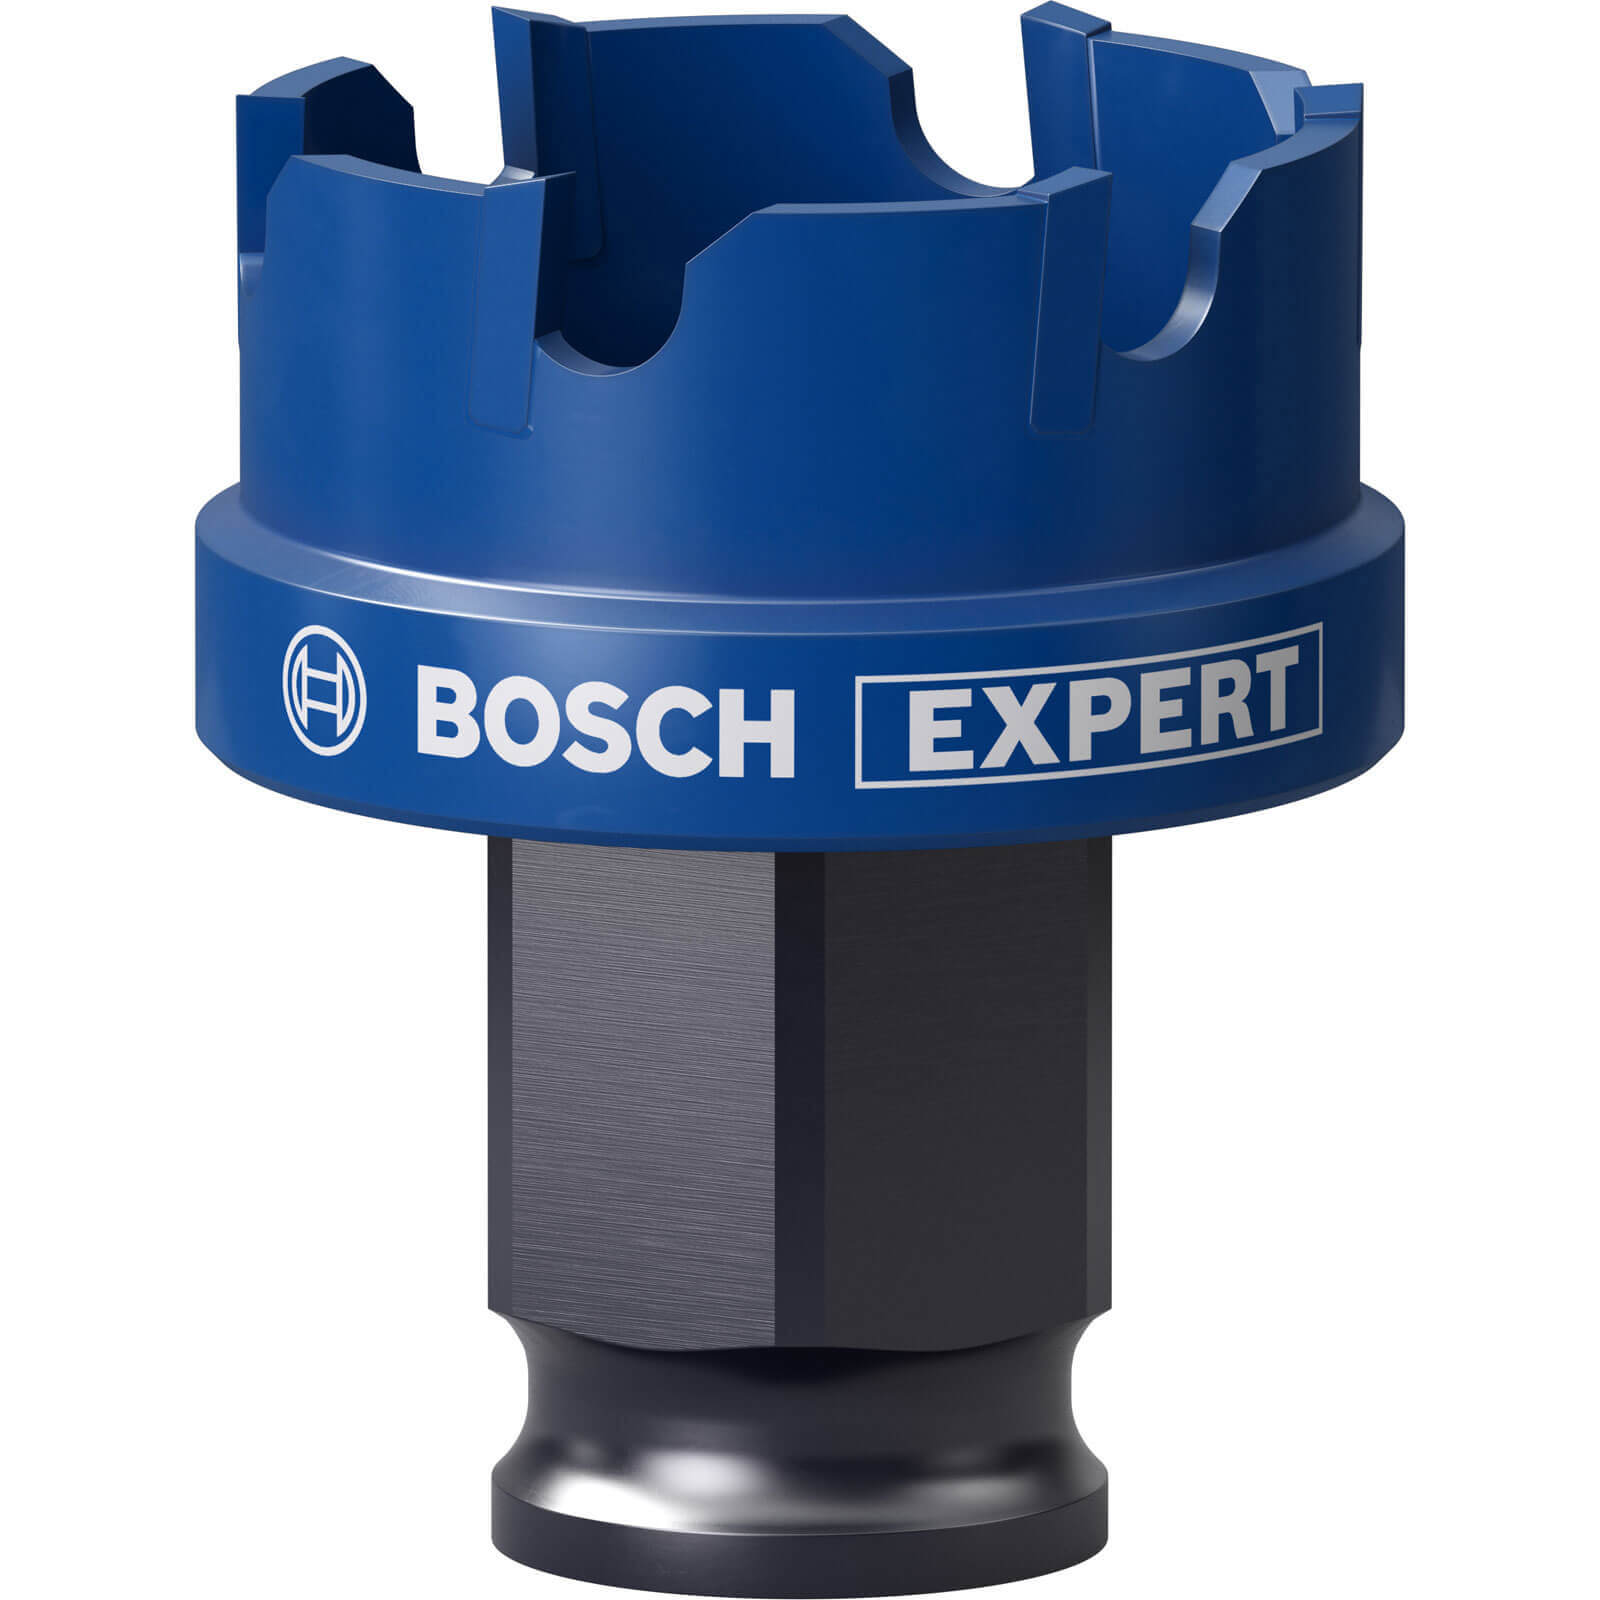 Bosch Expert Carbide Sheet Metal Hole Saw 30mm